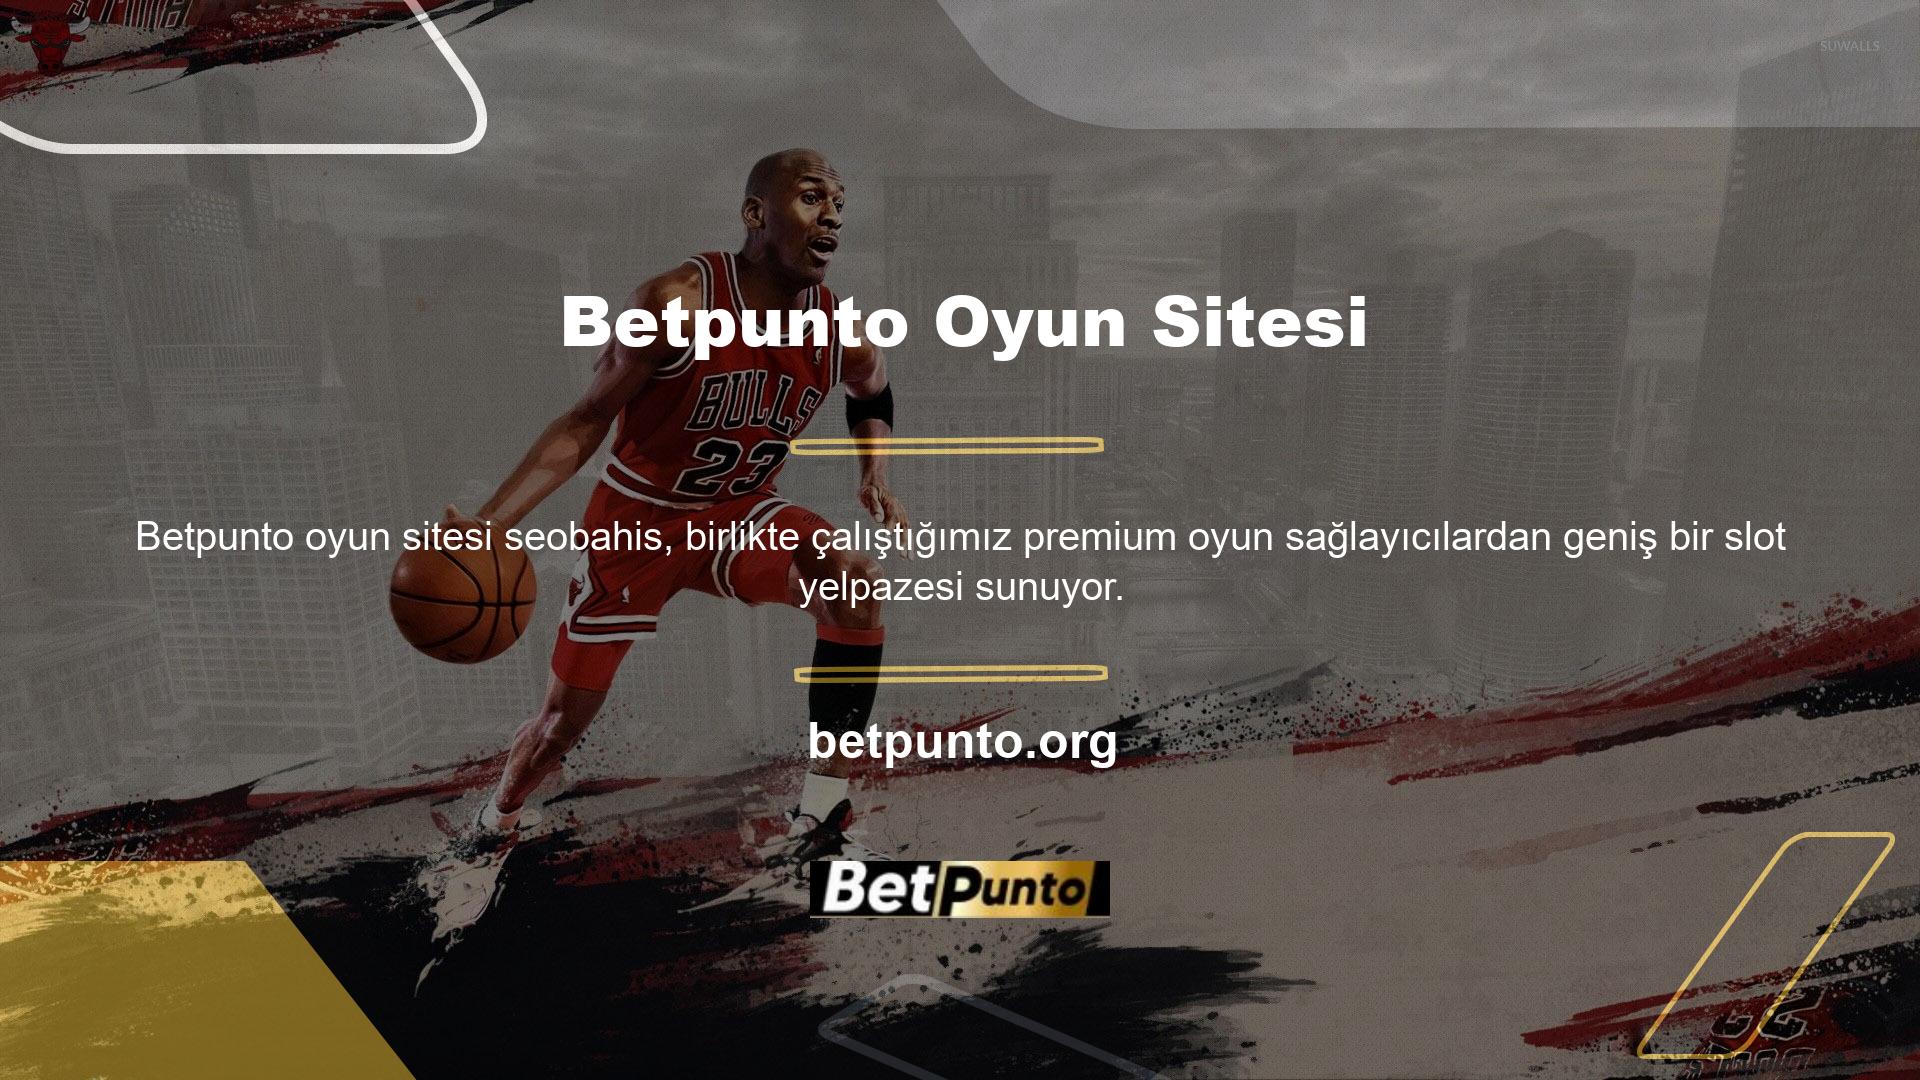 Betpunto slotu özel bir kazanma sistemi ve bonuslarla desteklenmektedir